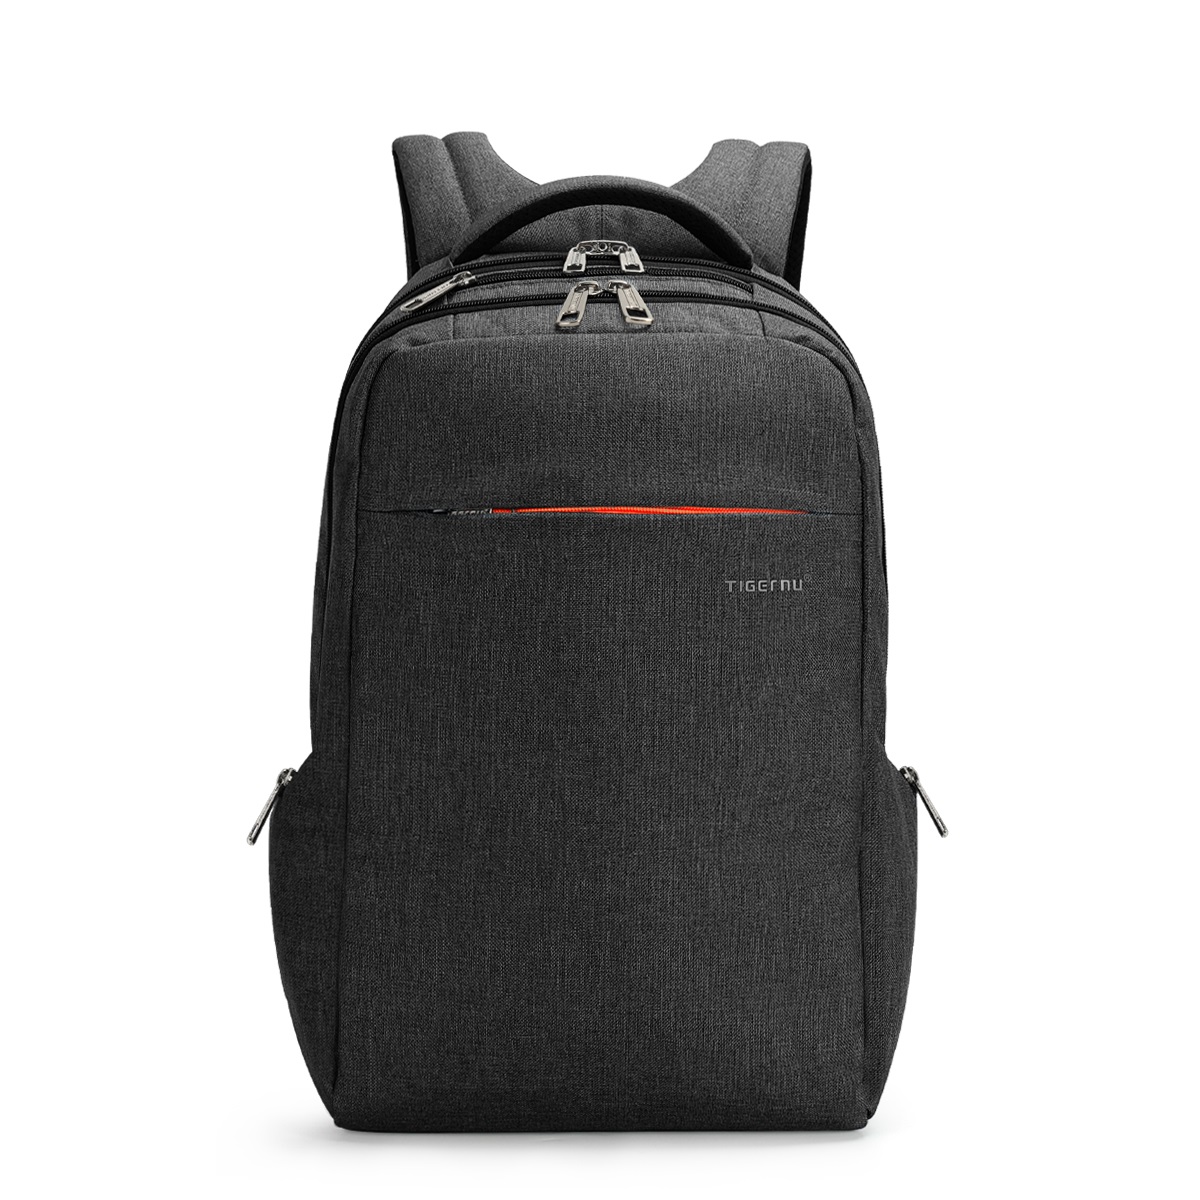 Tigernu Brand backpack male Splashproof men backpacking backpack Student School Backpack Bag Women Computer Laptop Bag: Default Title